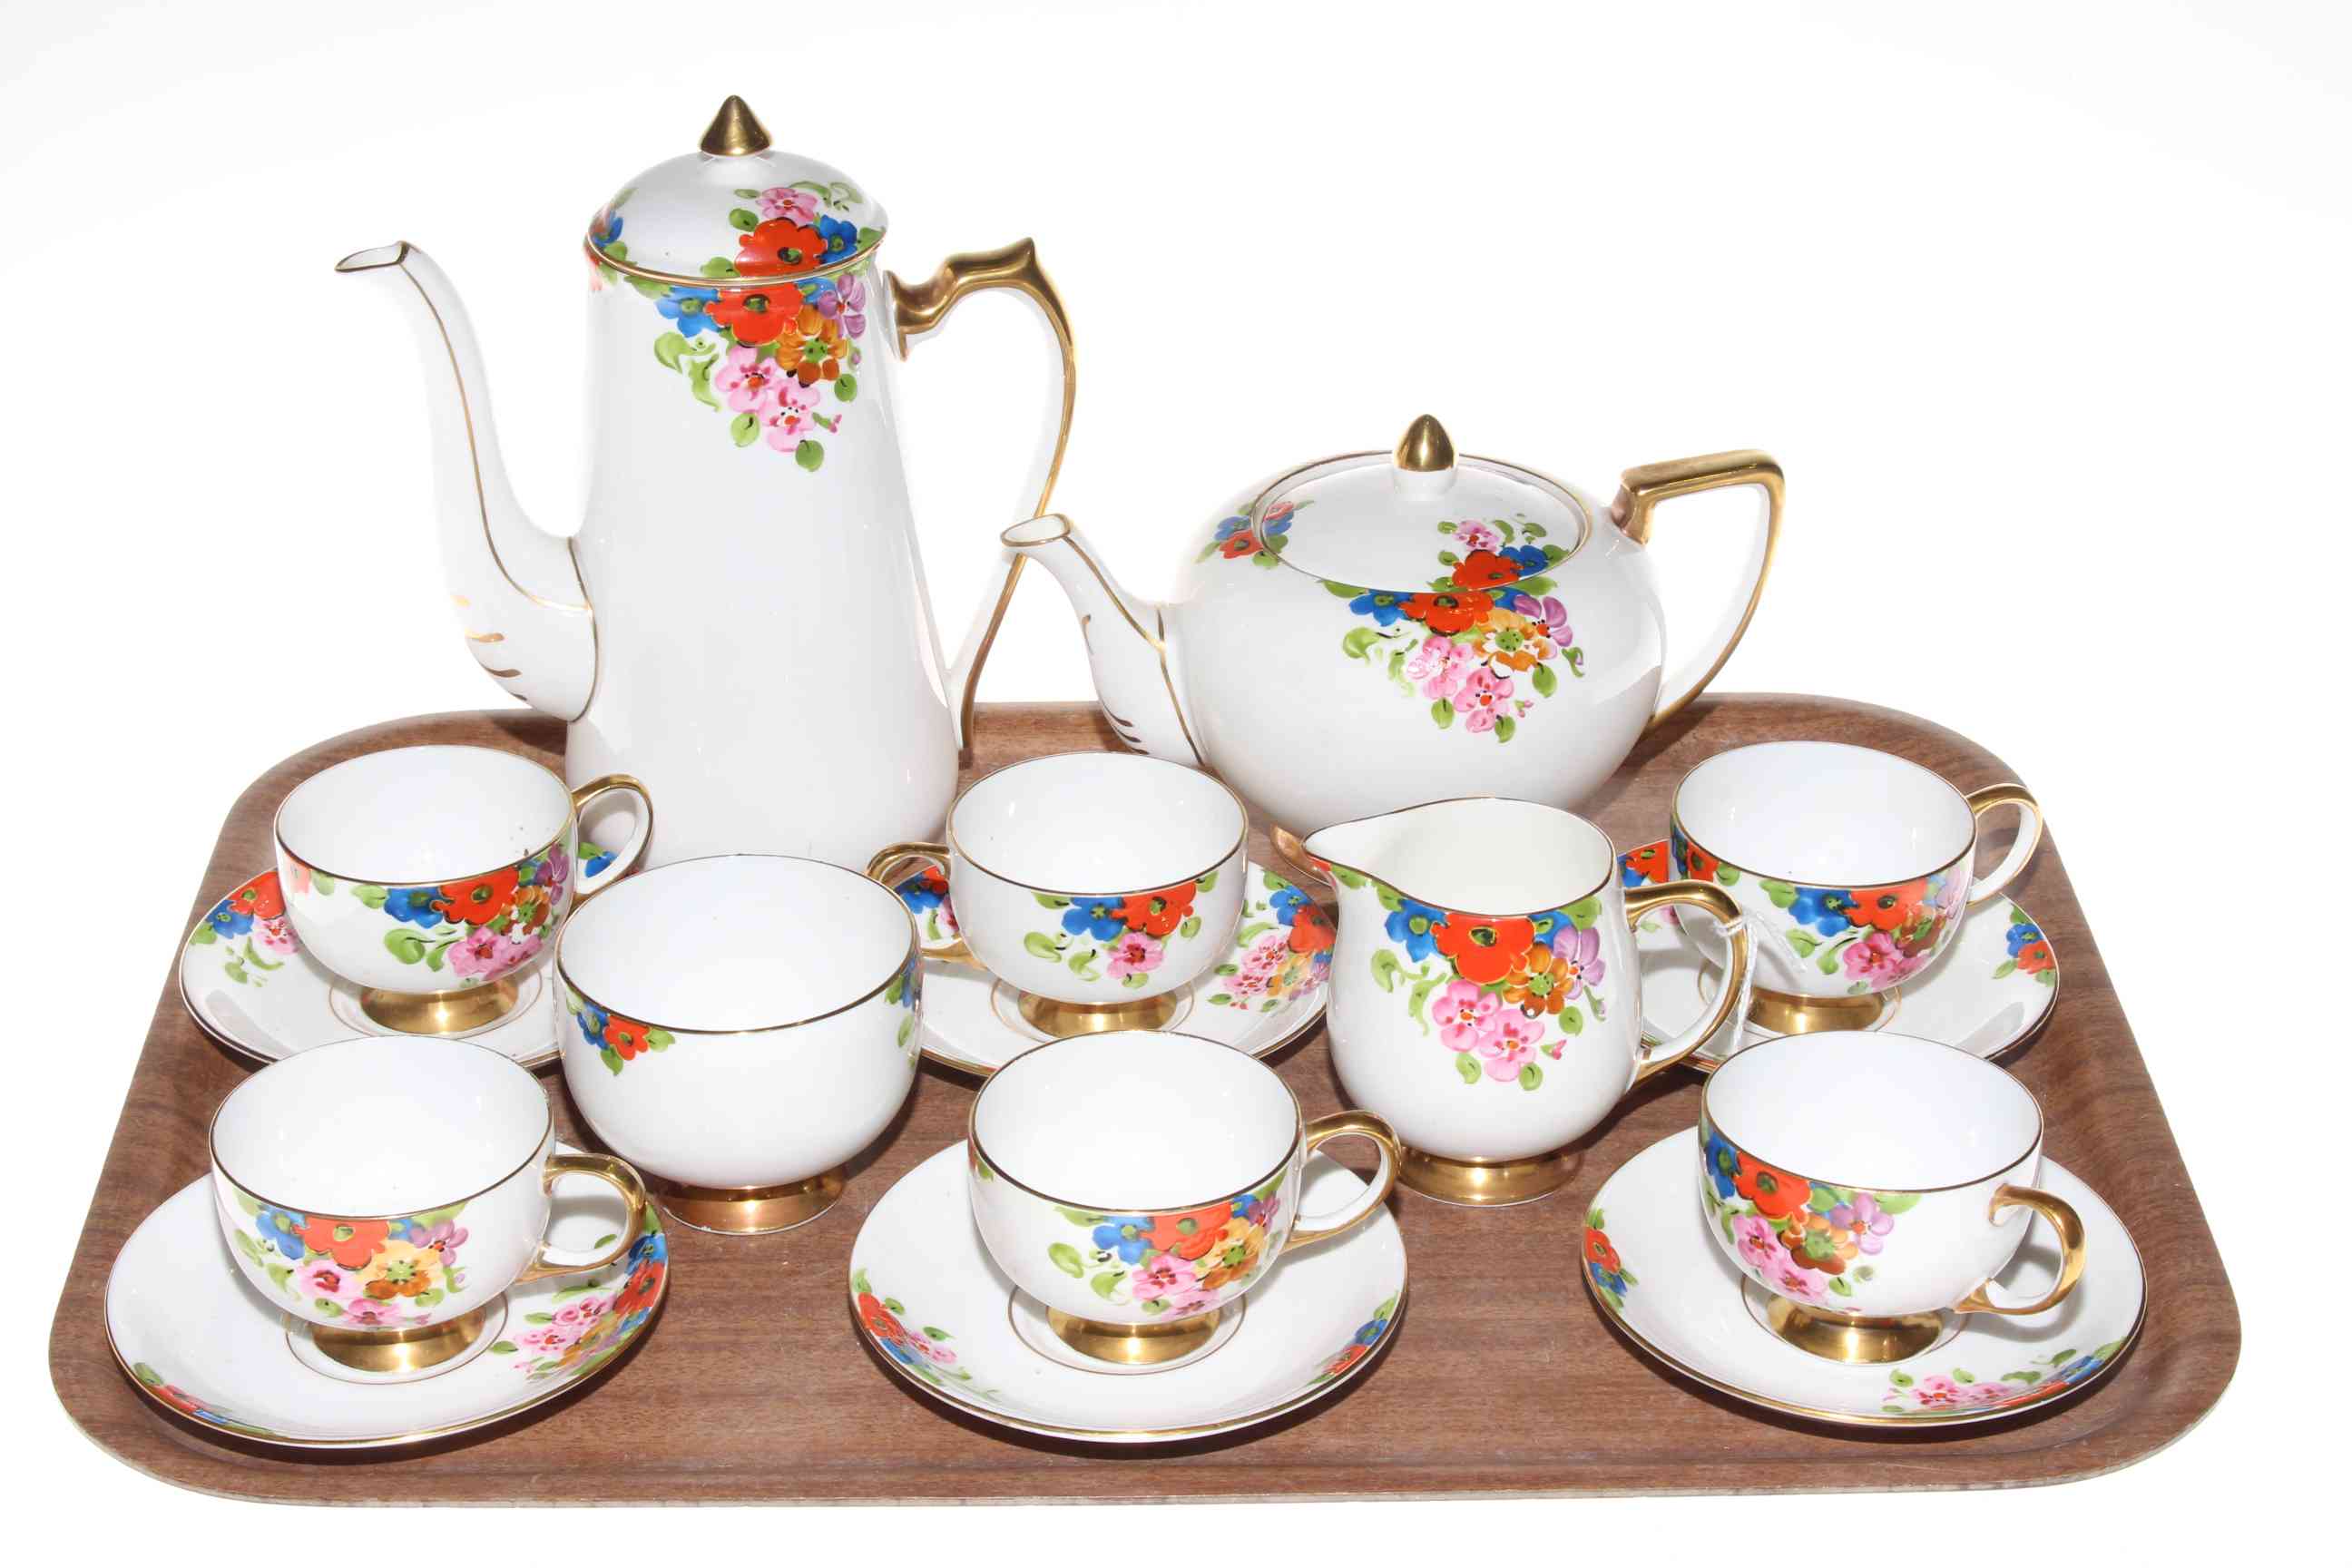 1930's sixteen piece Carlton china tea set with floral design.